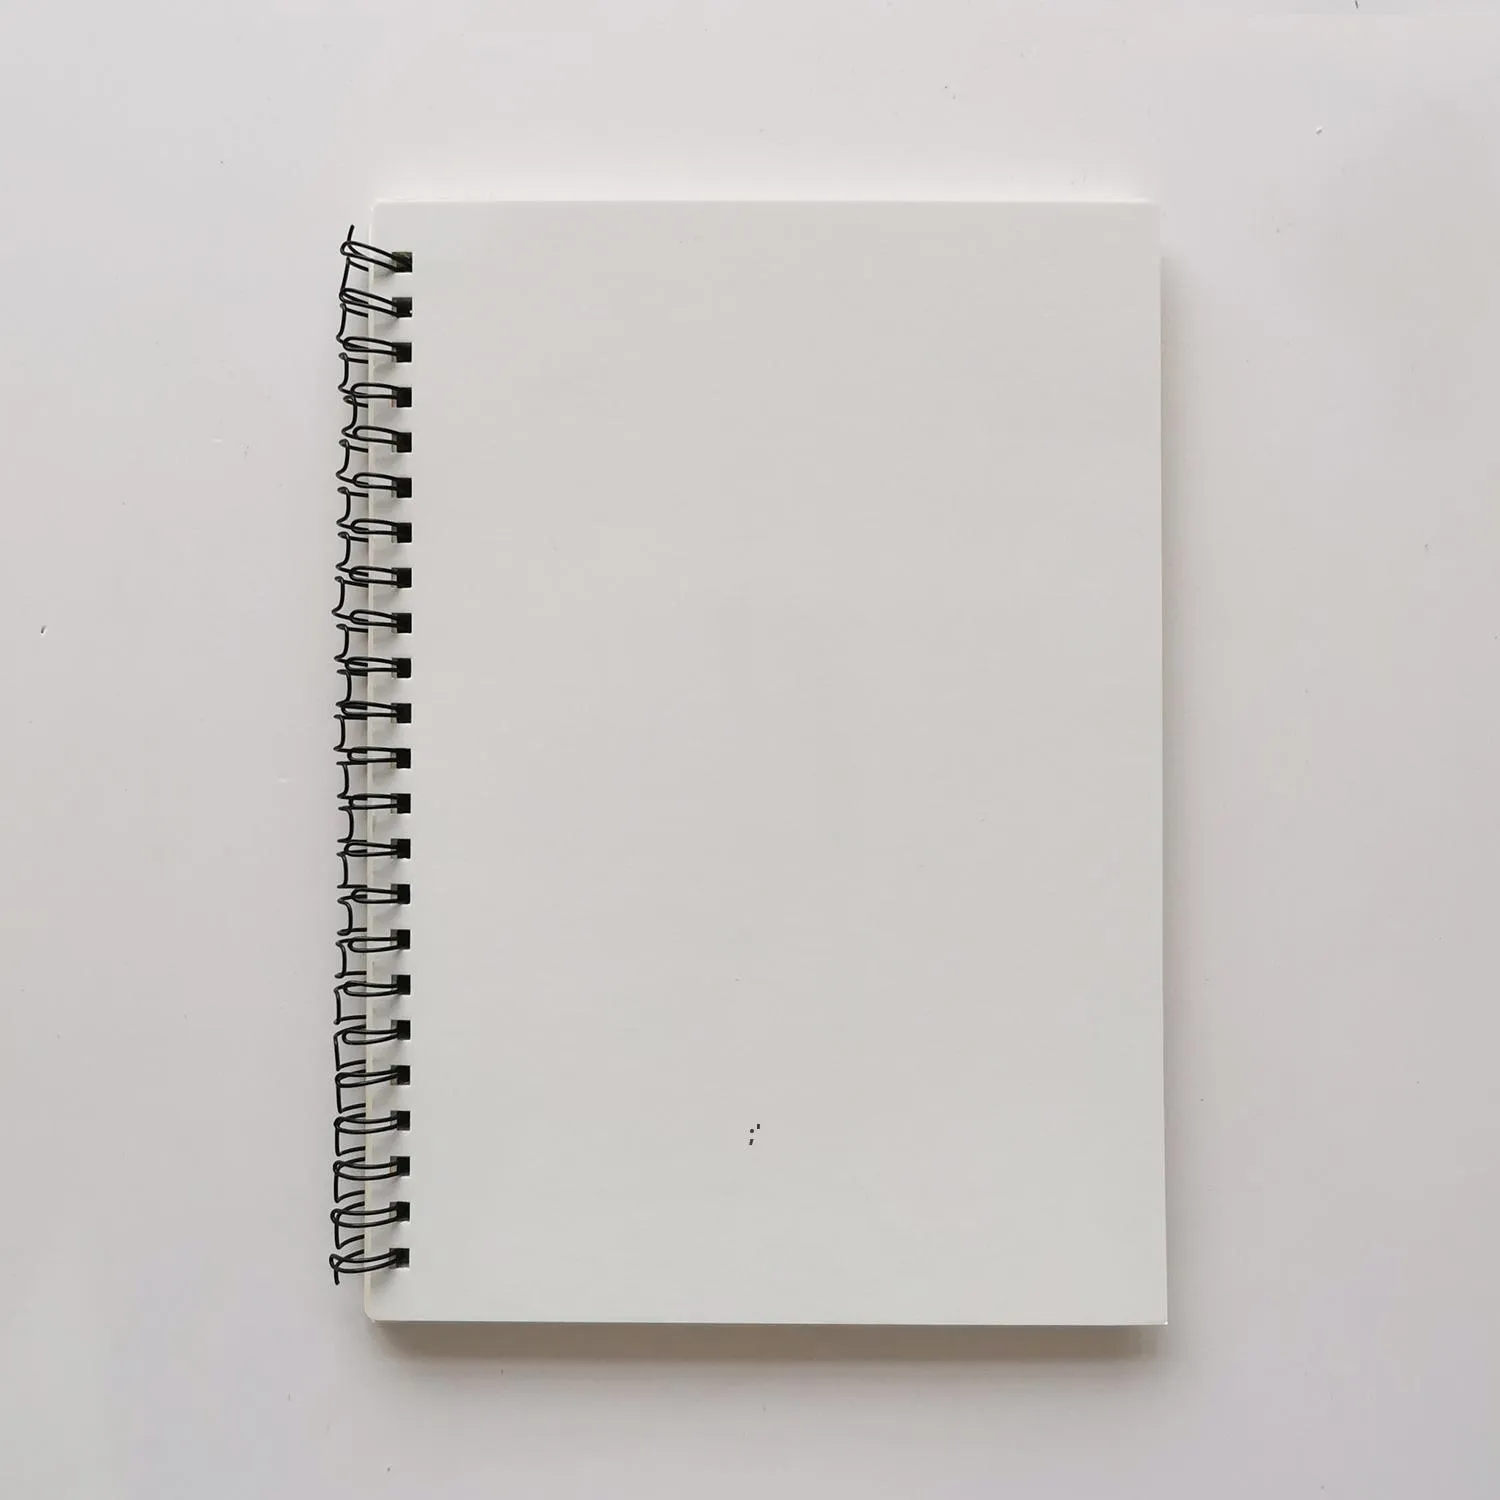 Cahier vierge de sublimation Journal en spirale Fil relié Bloc-notes blanc uni Taille de cadeau personnalisé en gros peut être mélangé ZZE13543